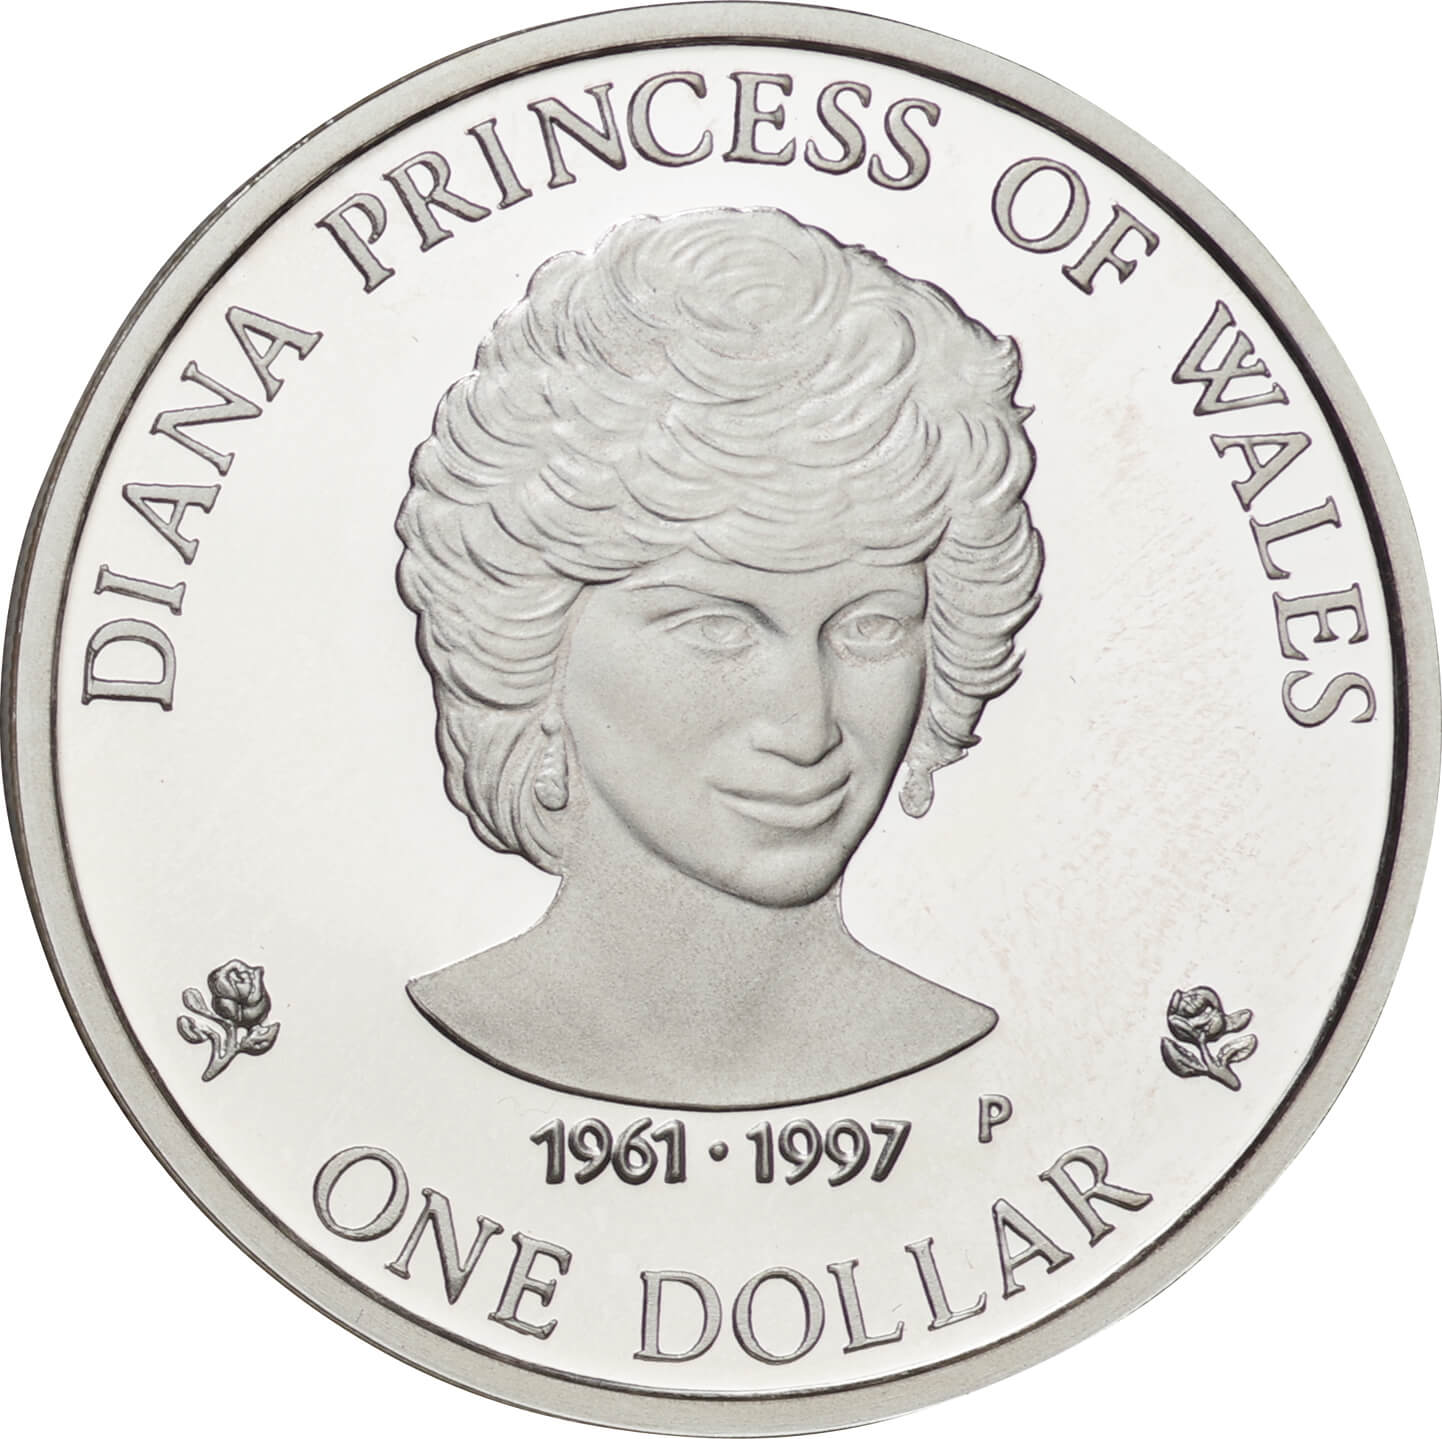 クック諸島-Cook Islands. 1997. Silver. ドル(Dollar). プルーフ